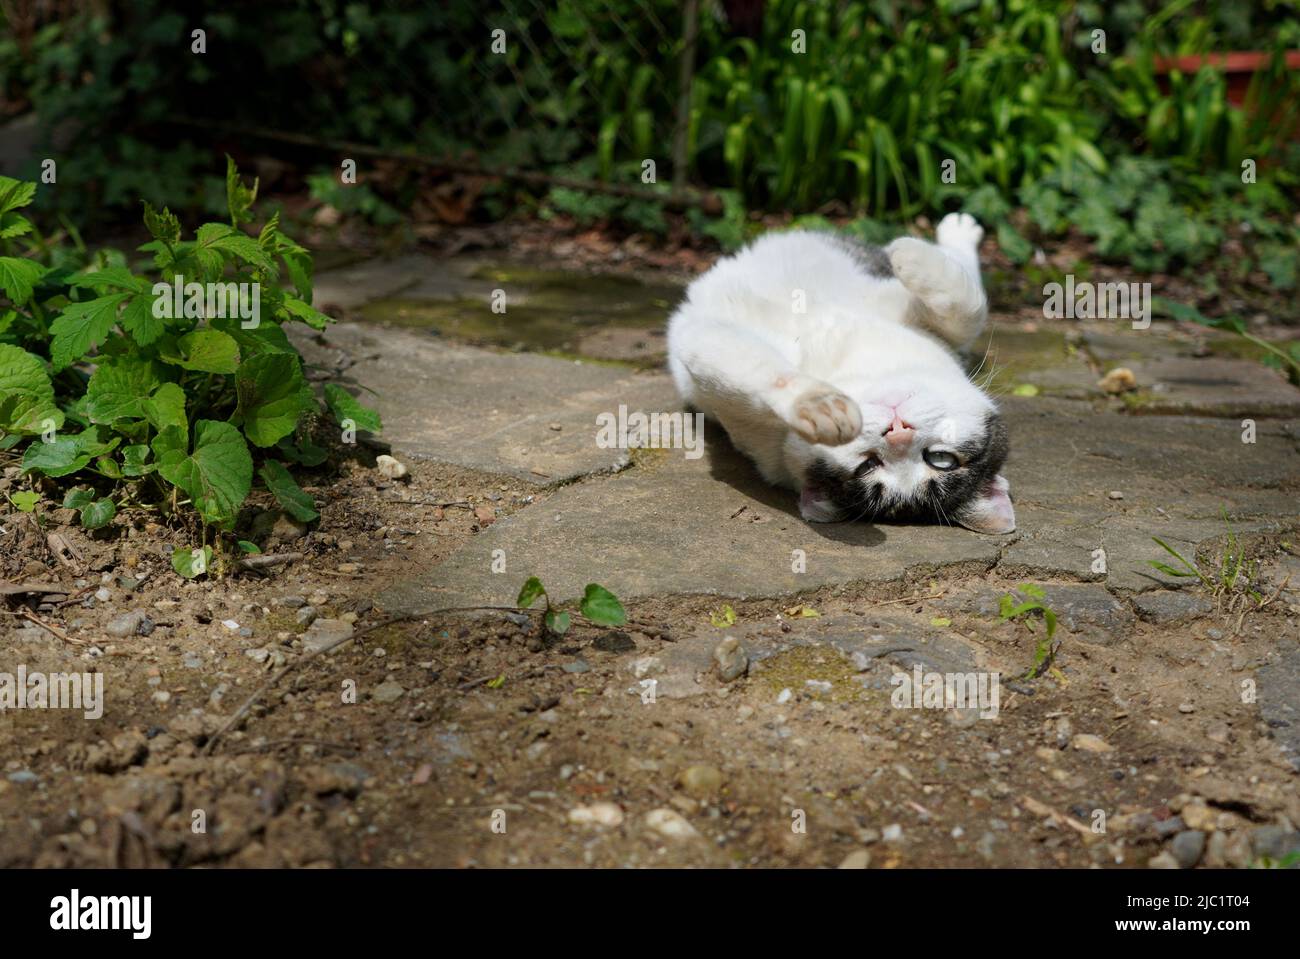 Un jeune chat espiègle se balader sur son dos dans une ruelle dans le jardin en regardant dans l'appareil photo Banque D'Images